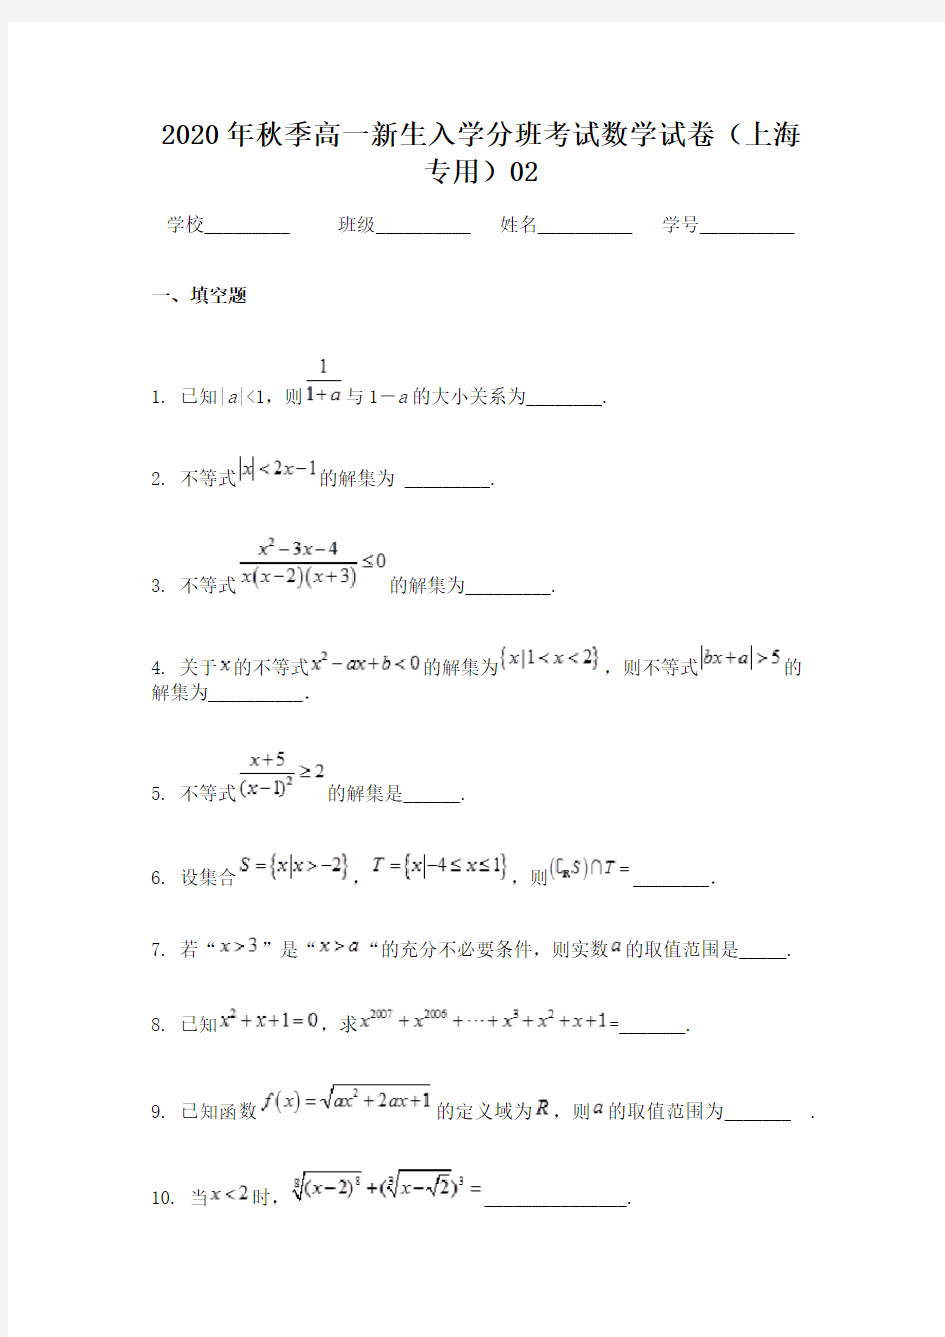 2020年秋季高一新生入学分班考试数学试卷(上海专用)02